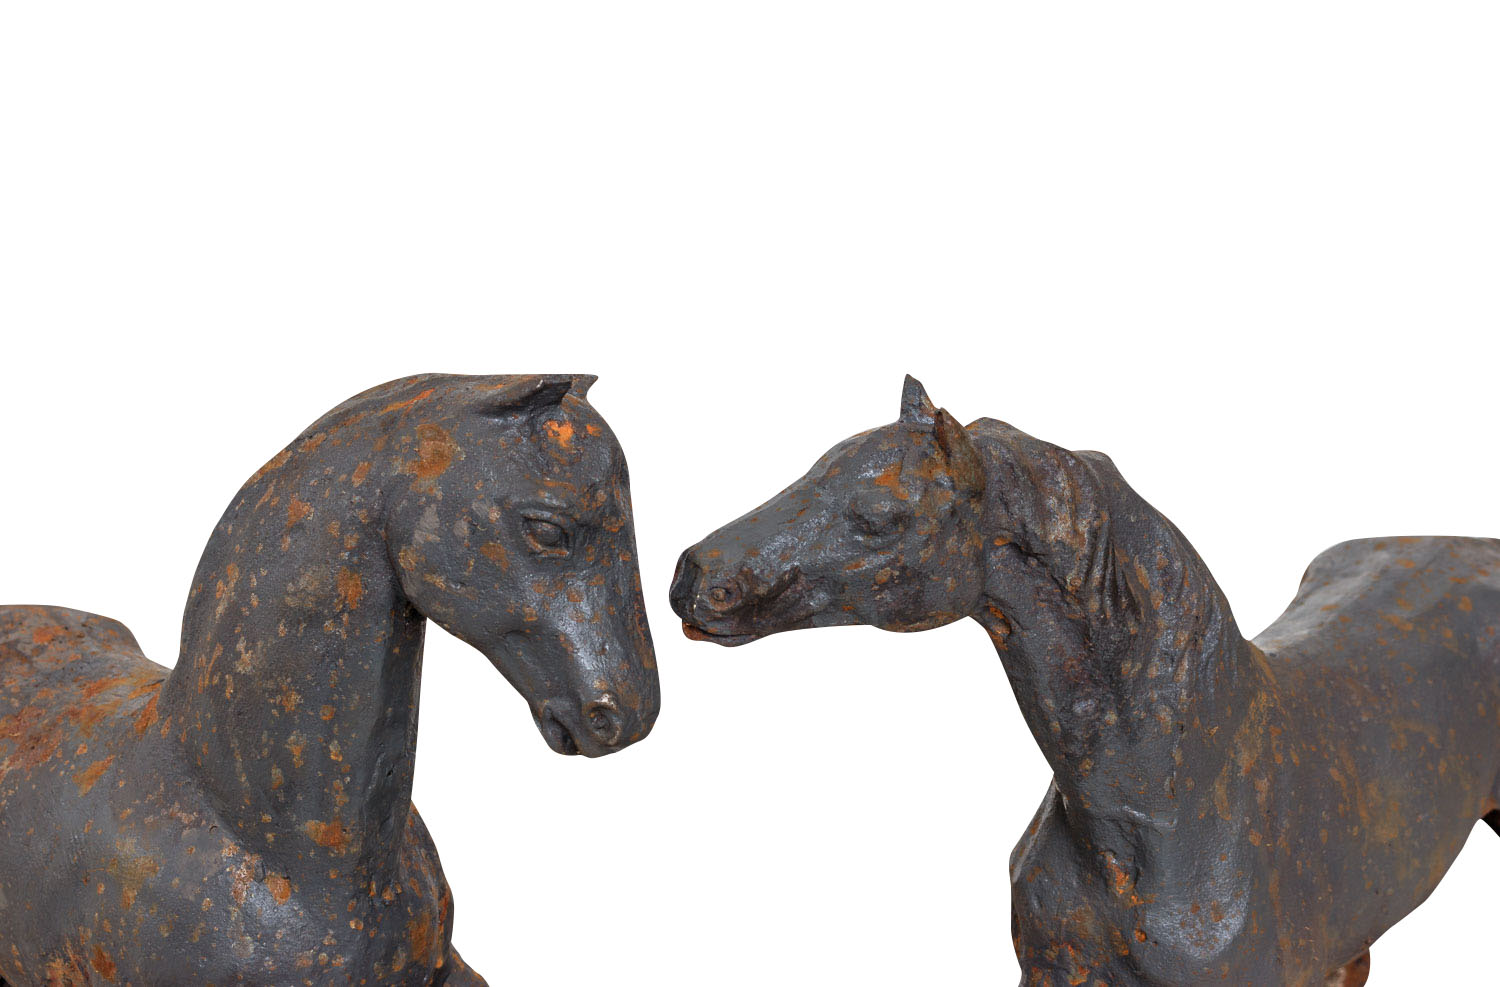 Gartendeko Eisen Best Of Garden Figure Pair Sculpture Statue Horse Garden Iron Rust Antique Style 38cm